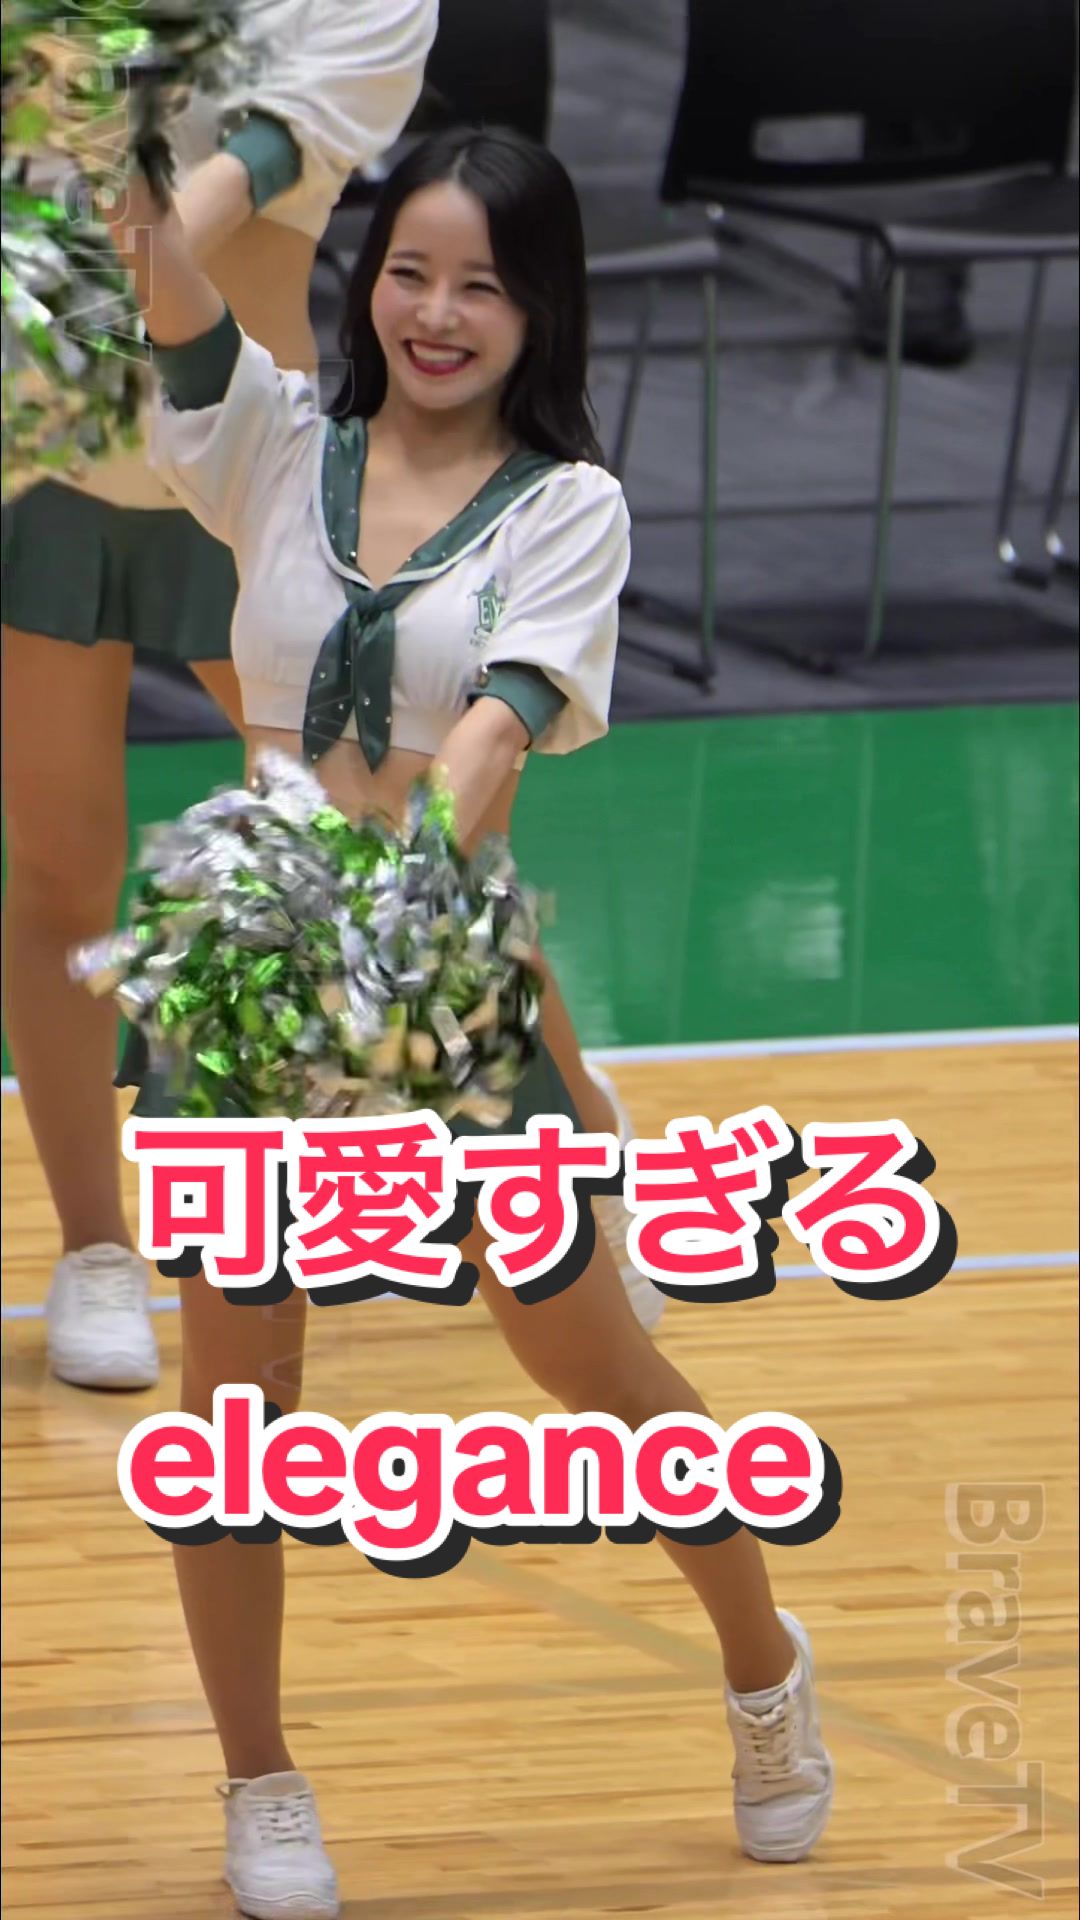 【美人チアリーダー！お尻ハミ出てる！？】可愛すぎるelegance #kawaii #bravetv #ブレイブtv #cheerleader #cheerleading #japanesegirl #エクセレンス 